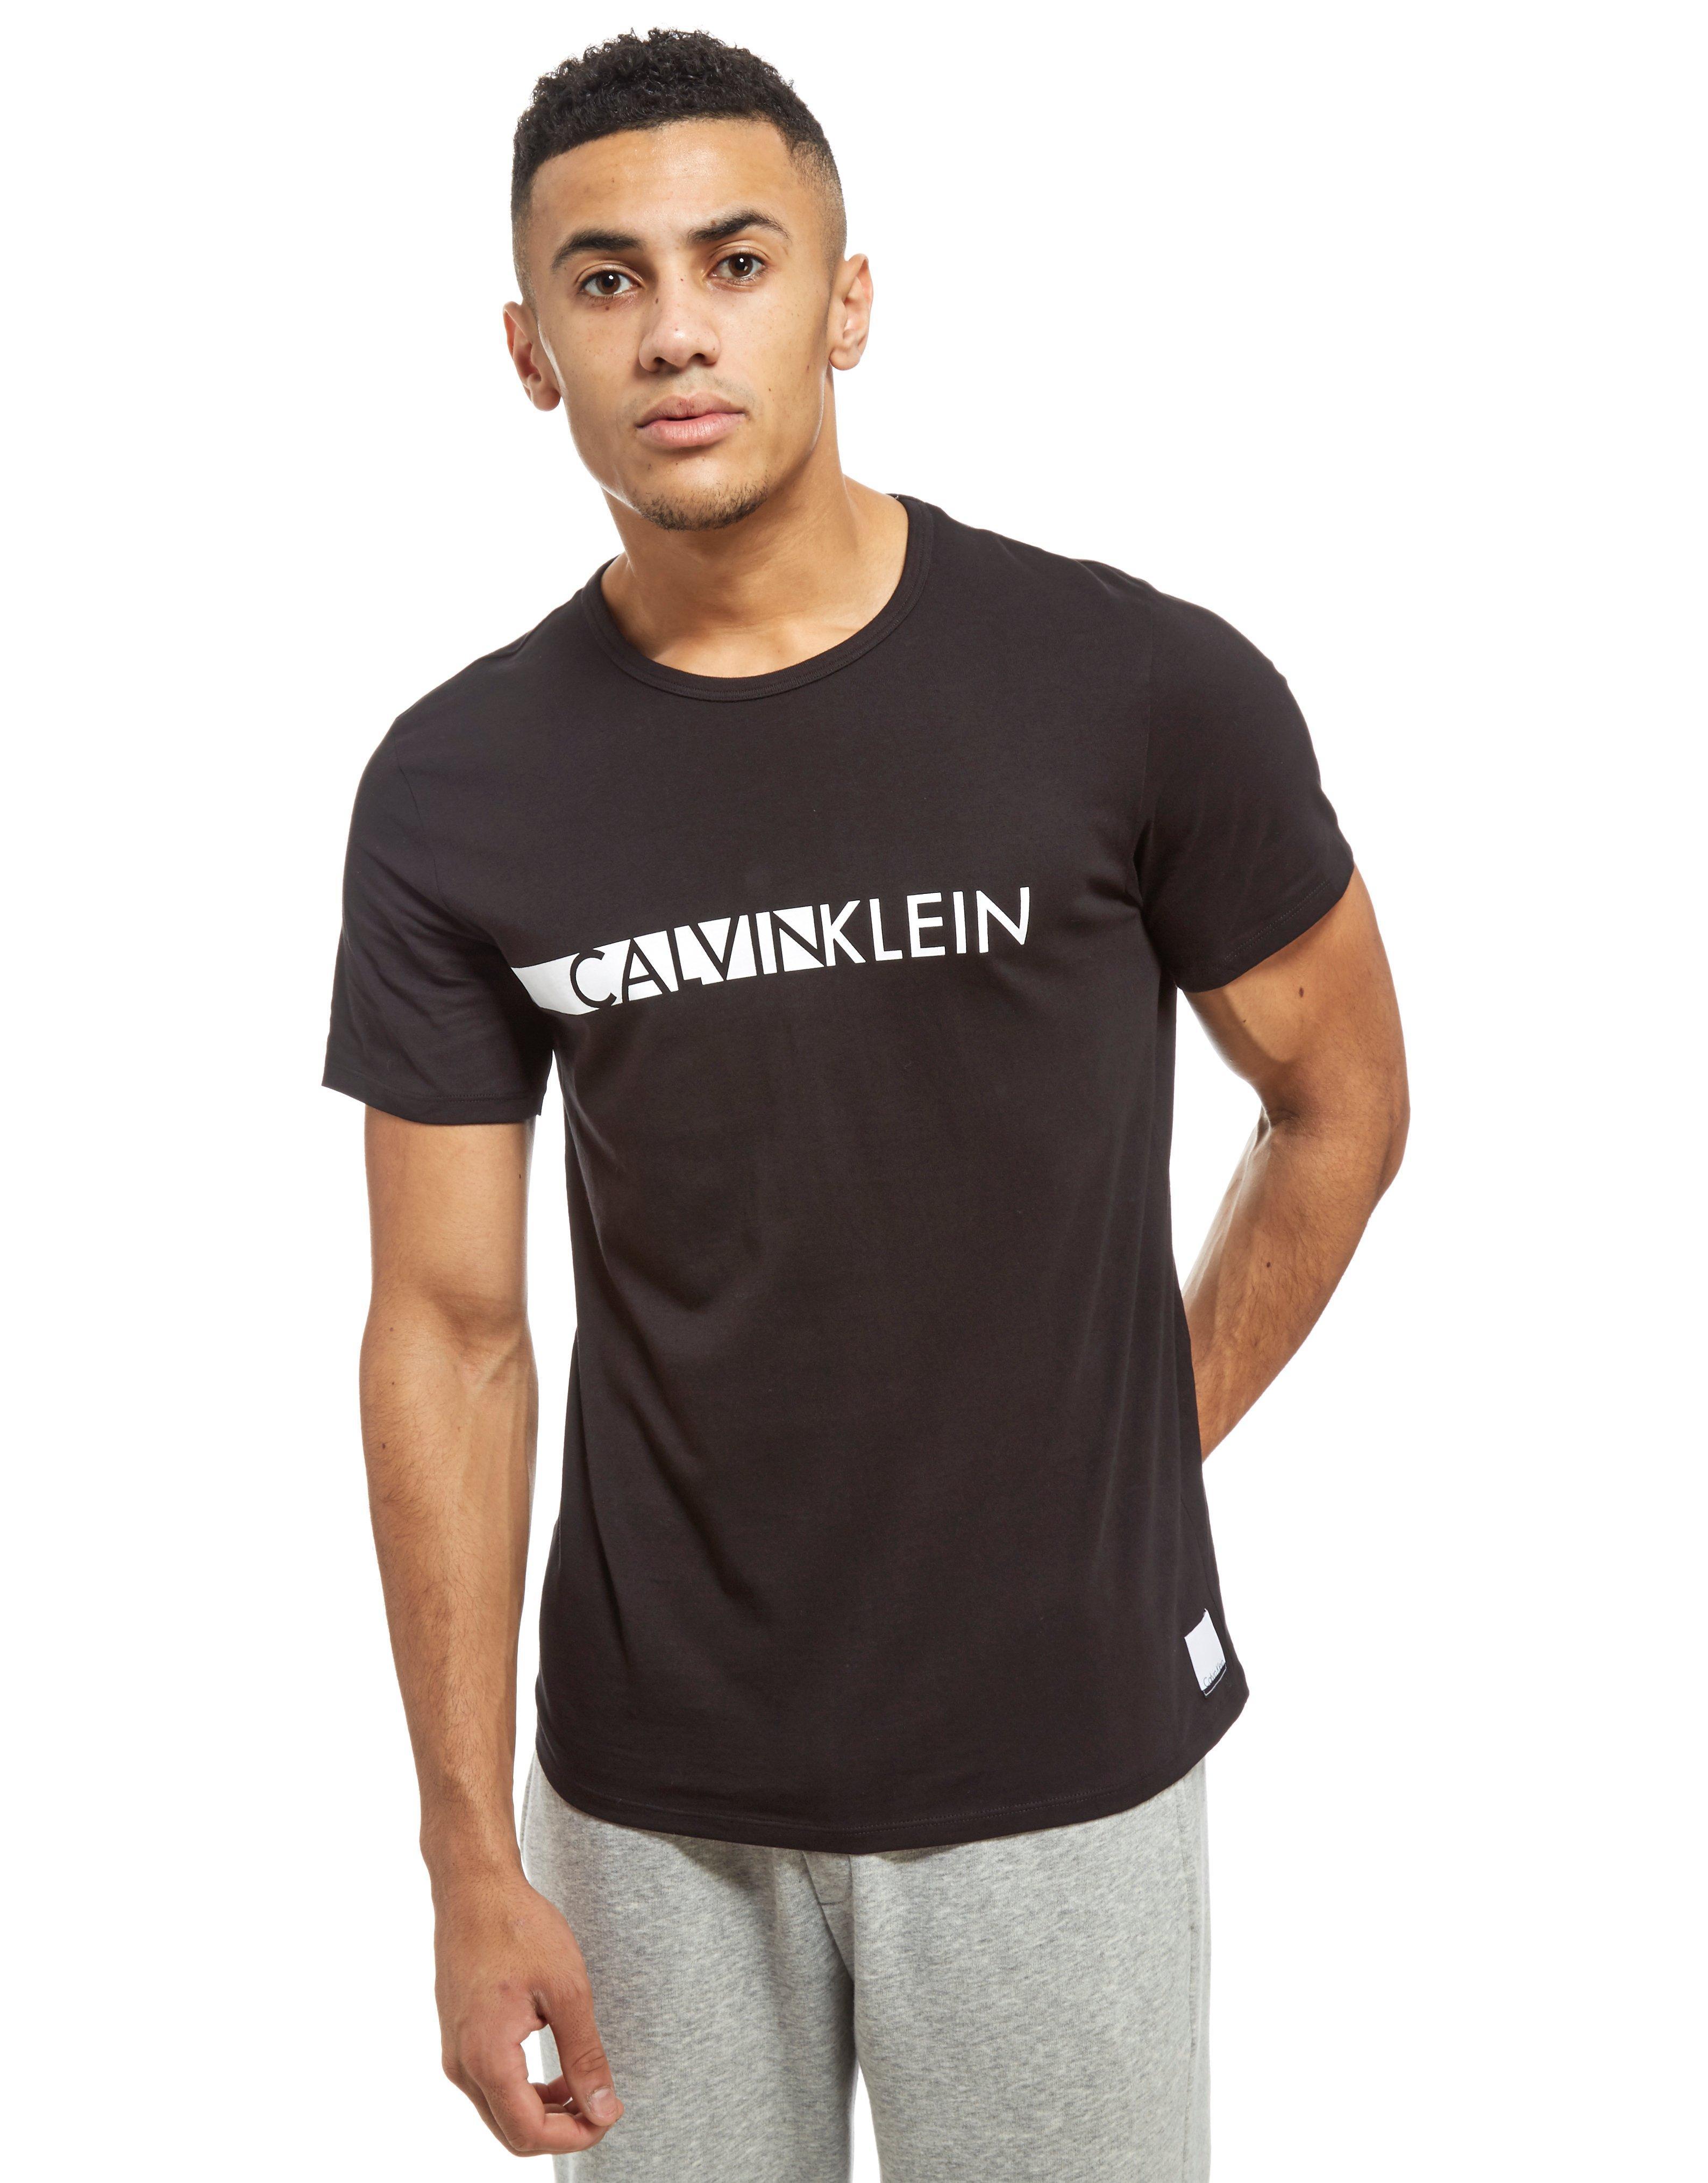 Lyst - Calvin Klein Short Sleeve Central Logo T-shirt in Black for Men